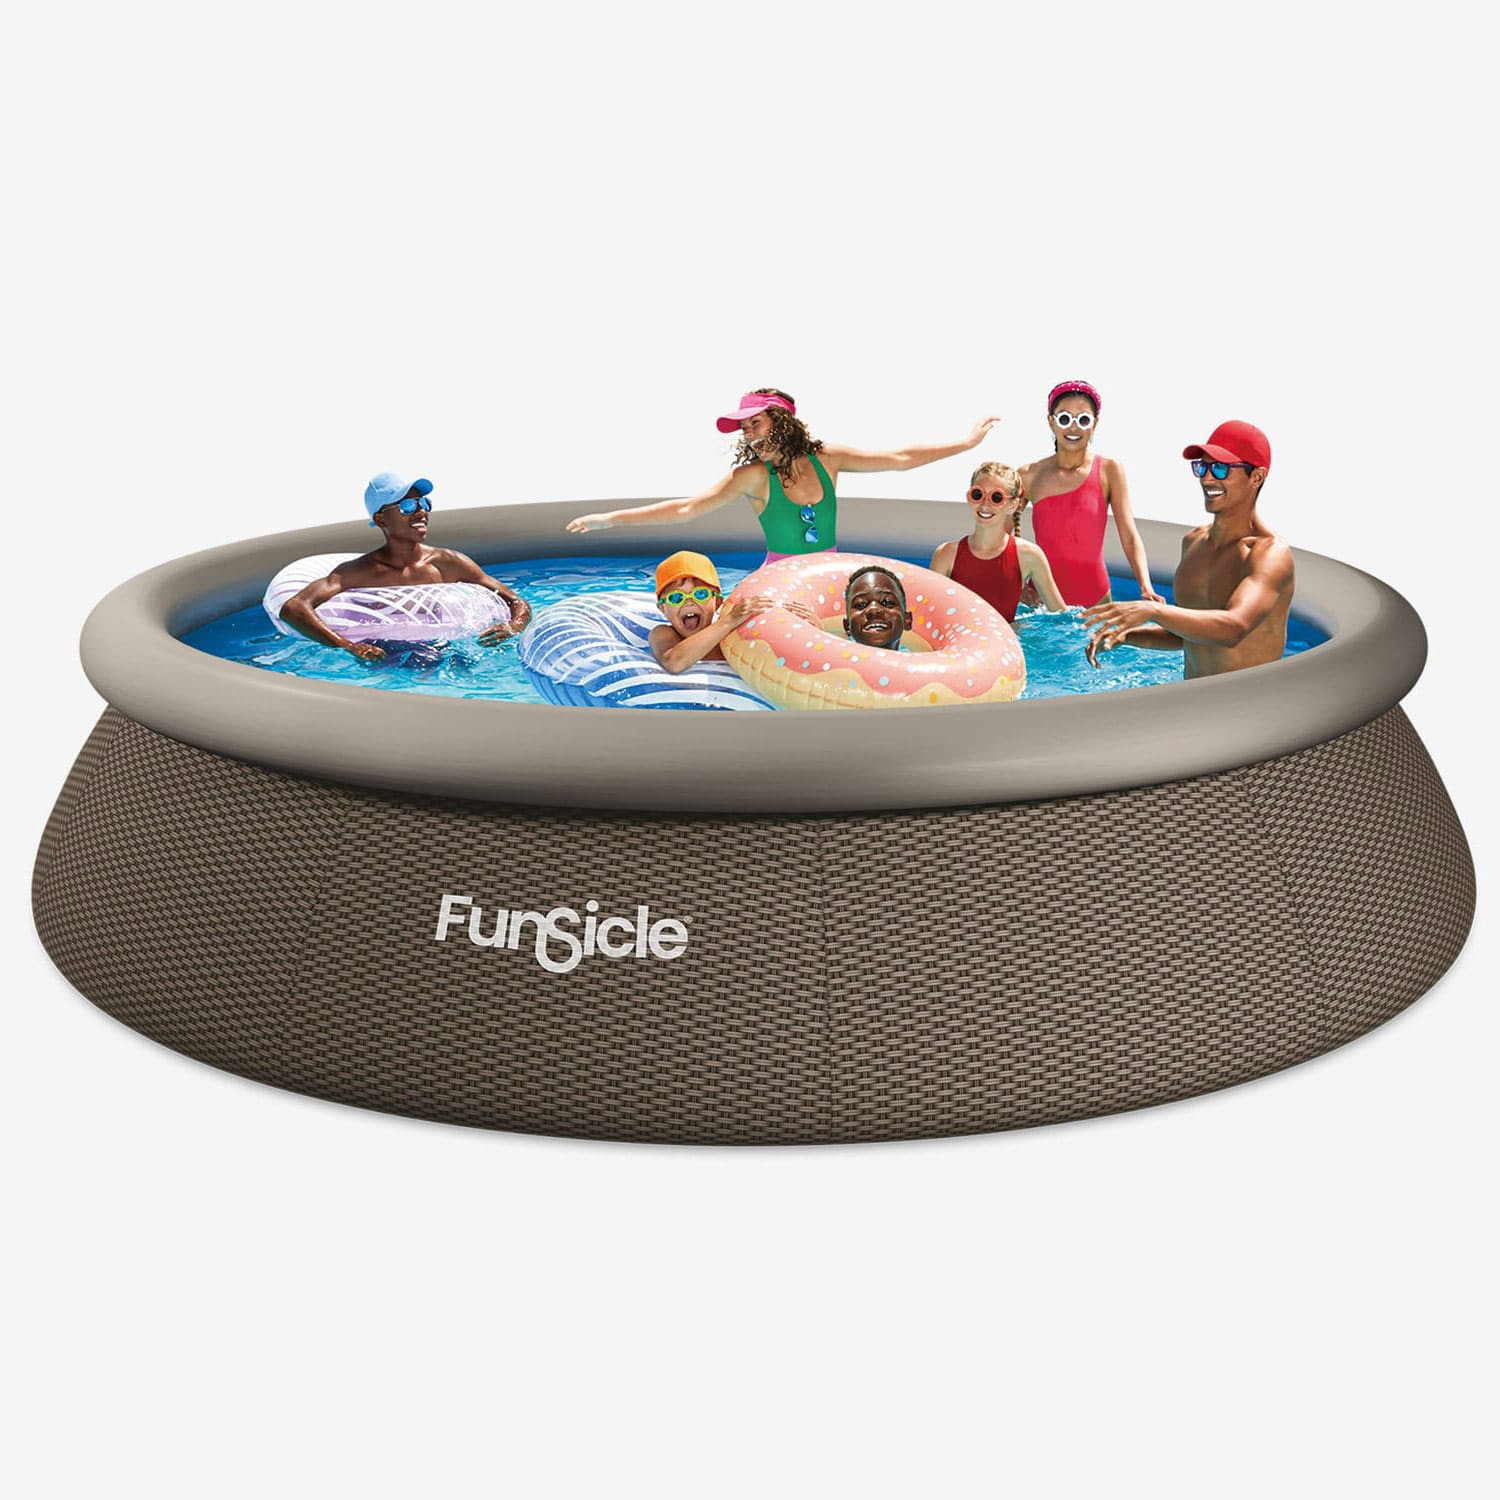 Funsicle quick set pool